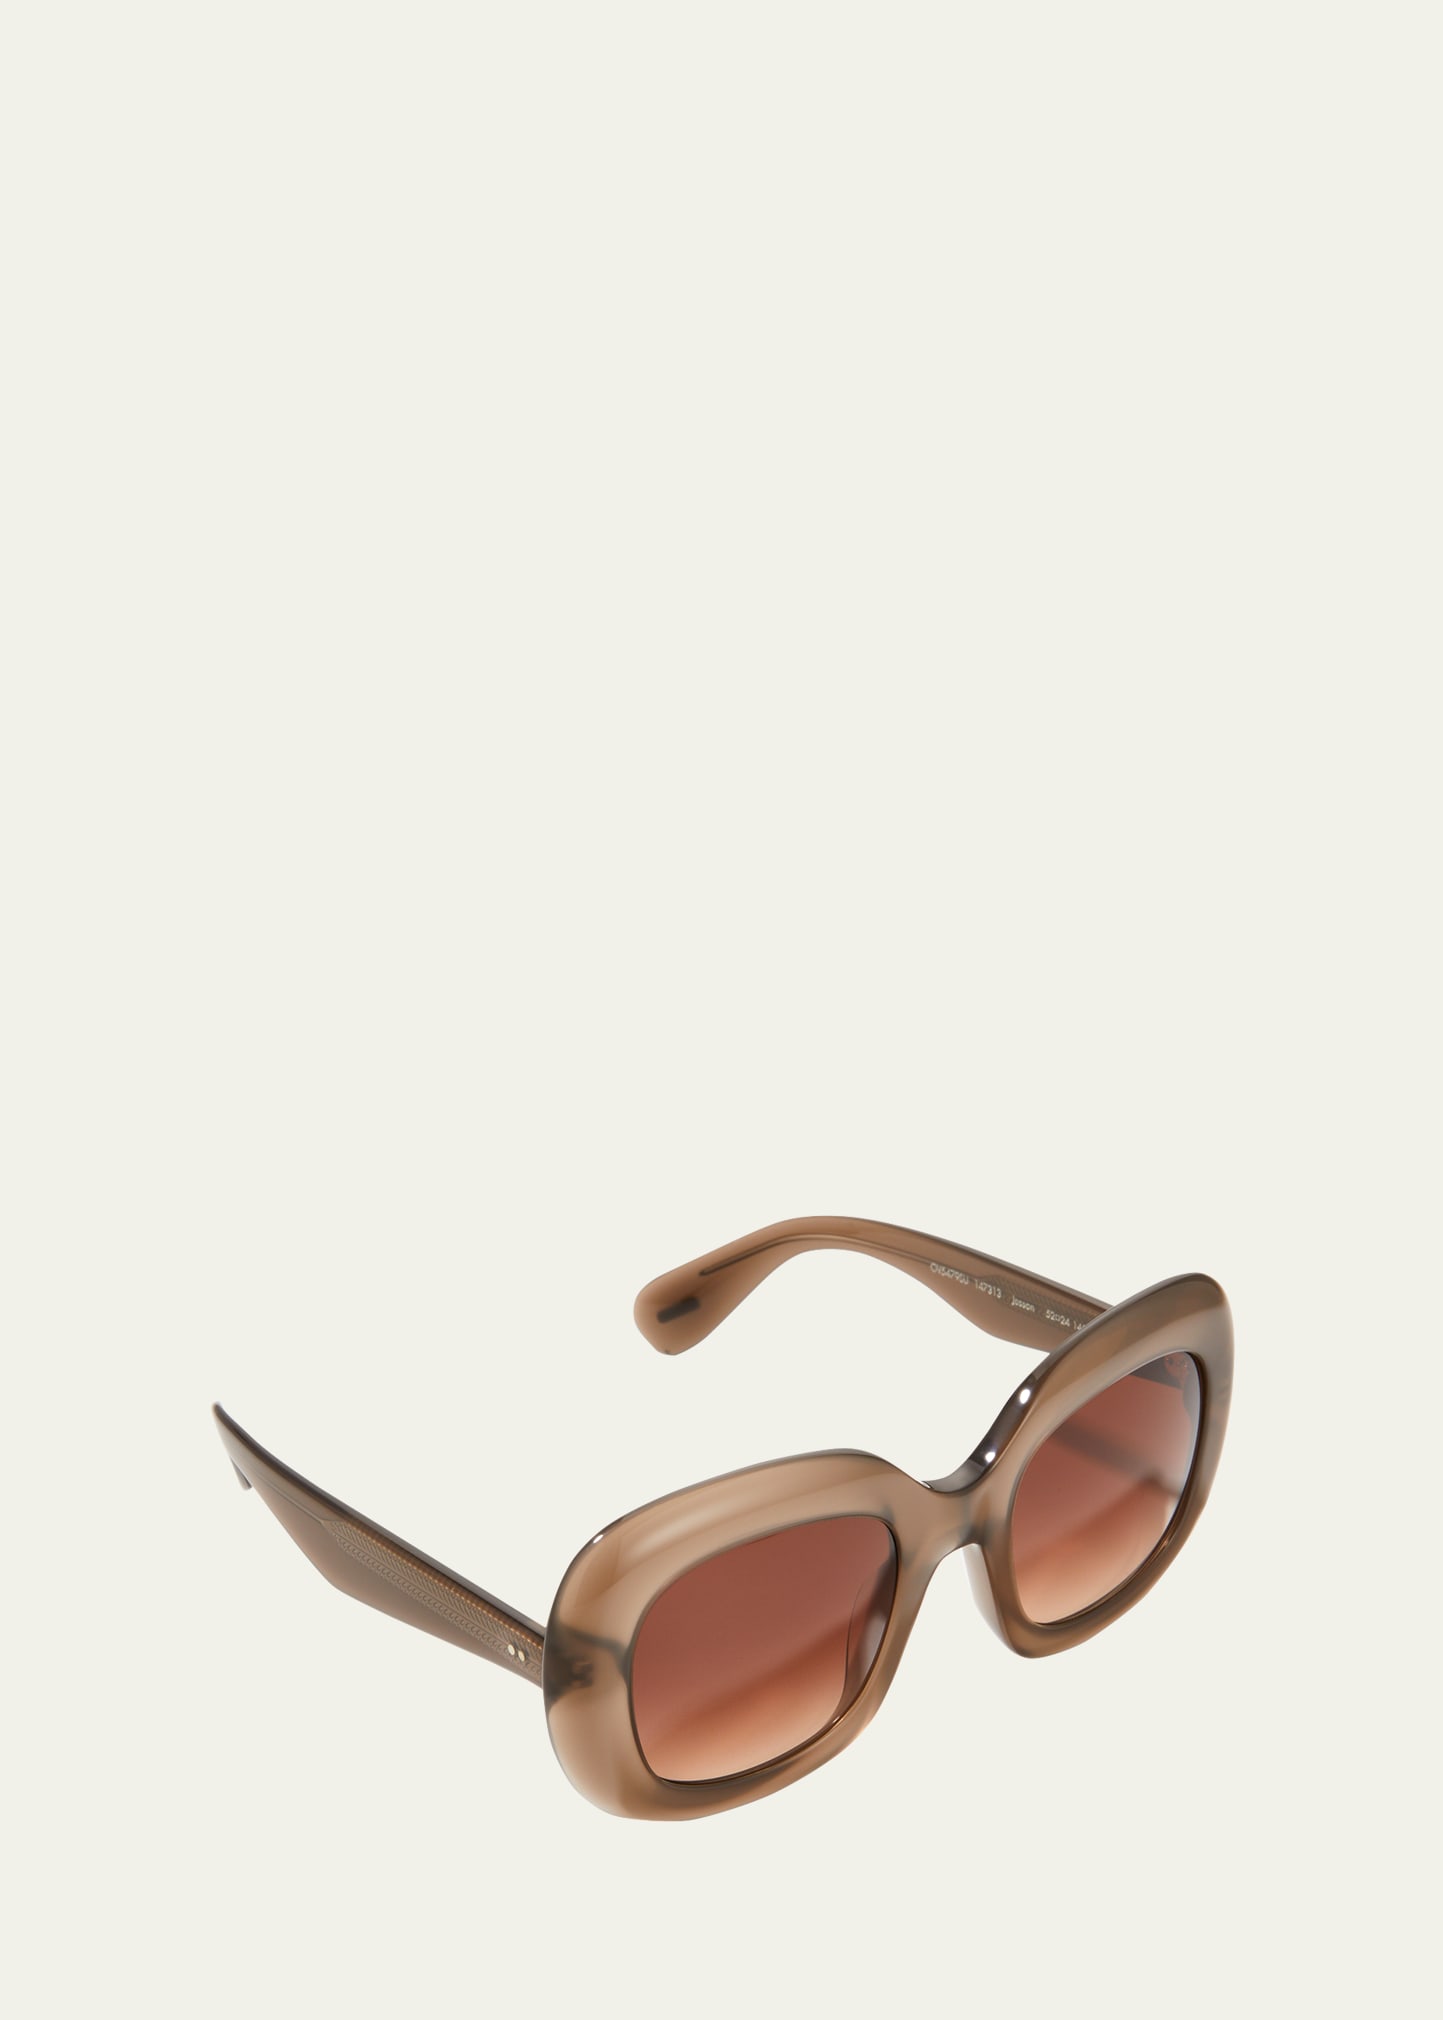 Jesson Round Semi-Transparent Acetate Sunglasses